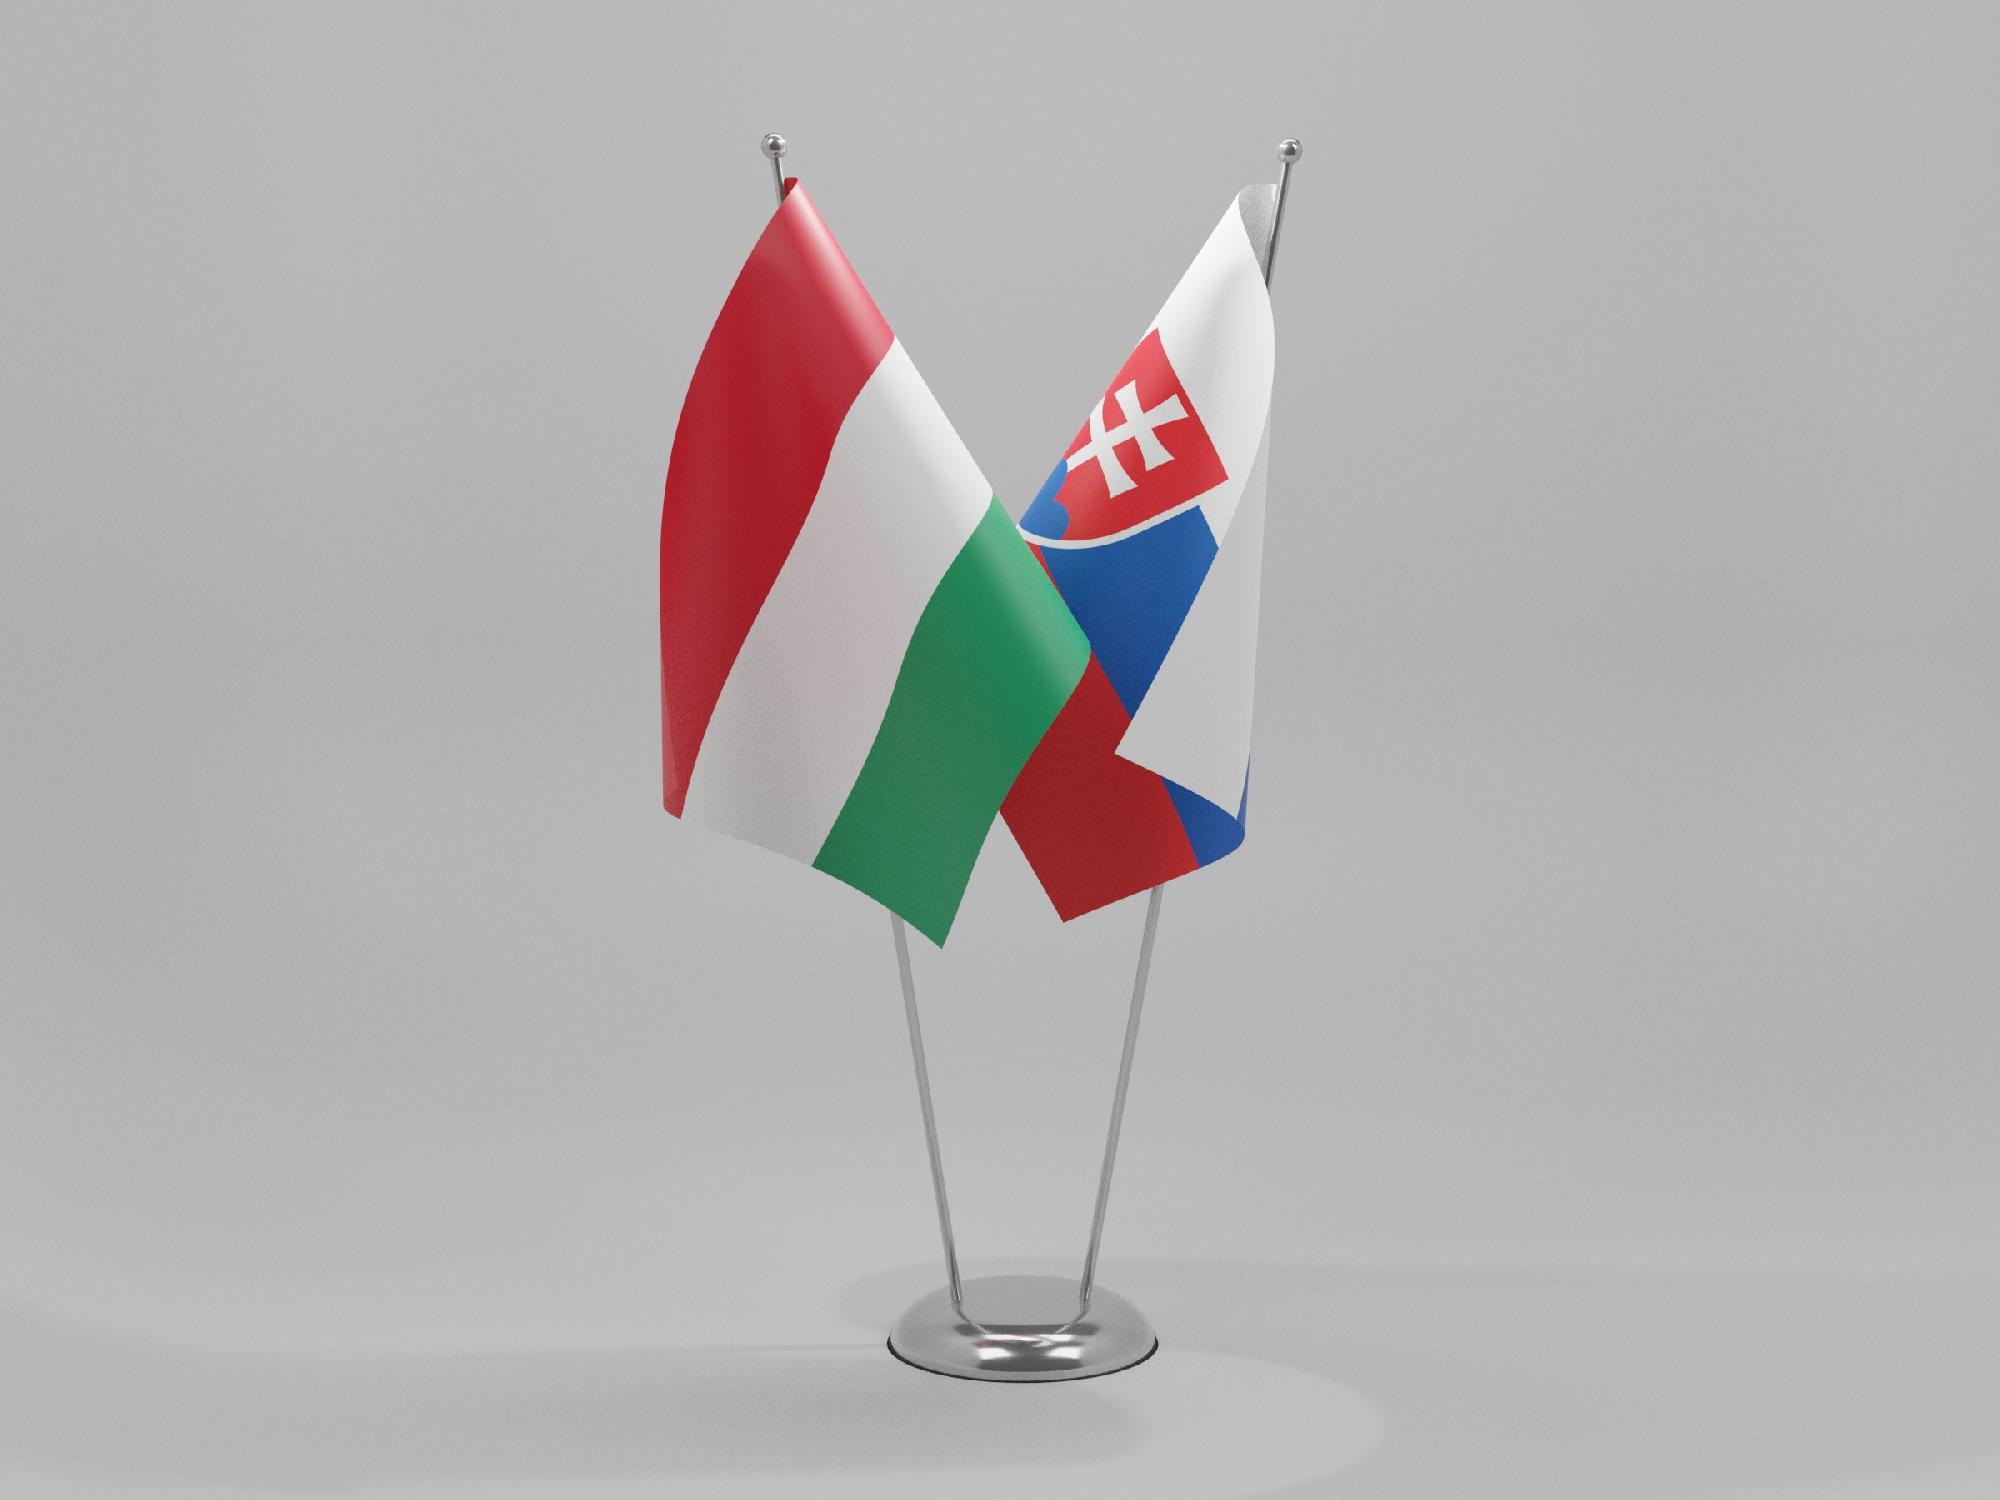 A szlovákok is háborognak Orbán Viktor egy tusványosi kijelentése miatt